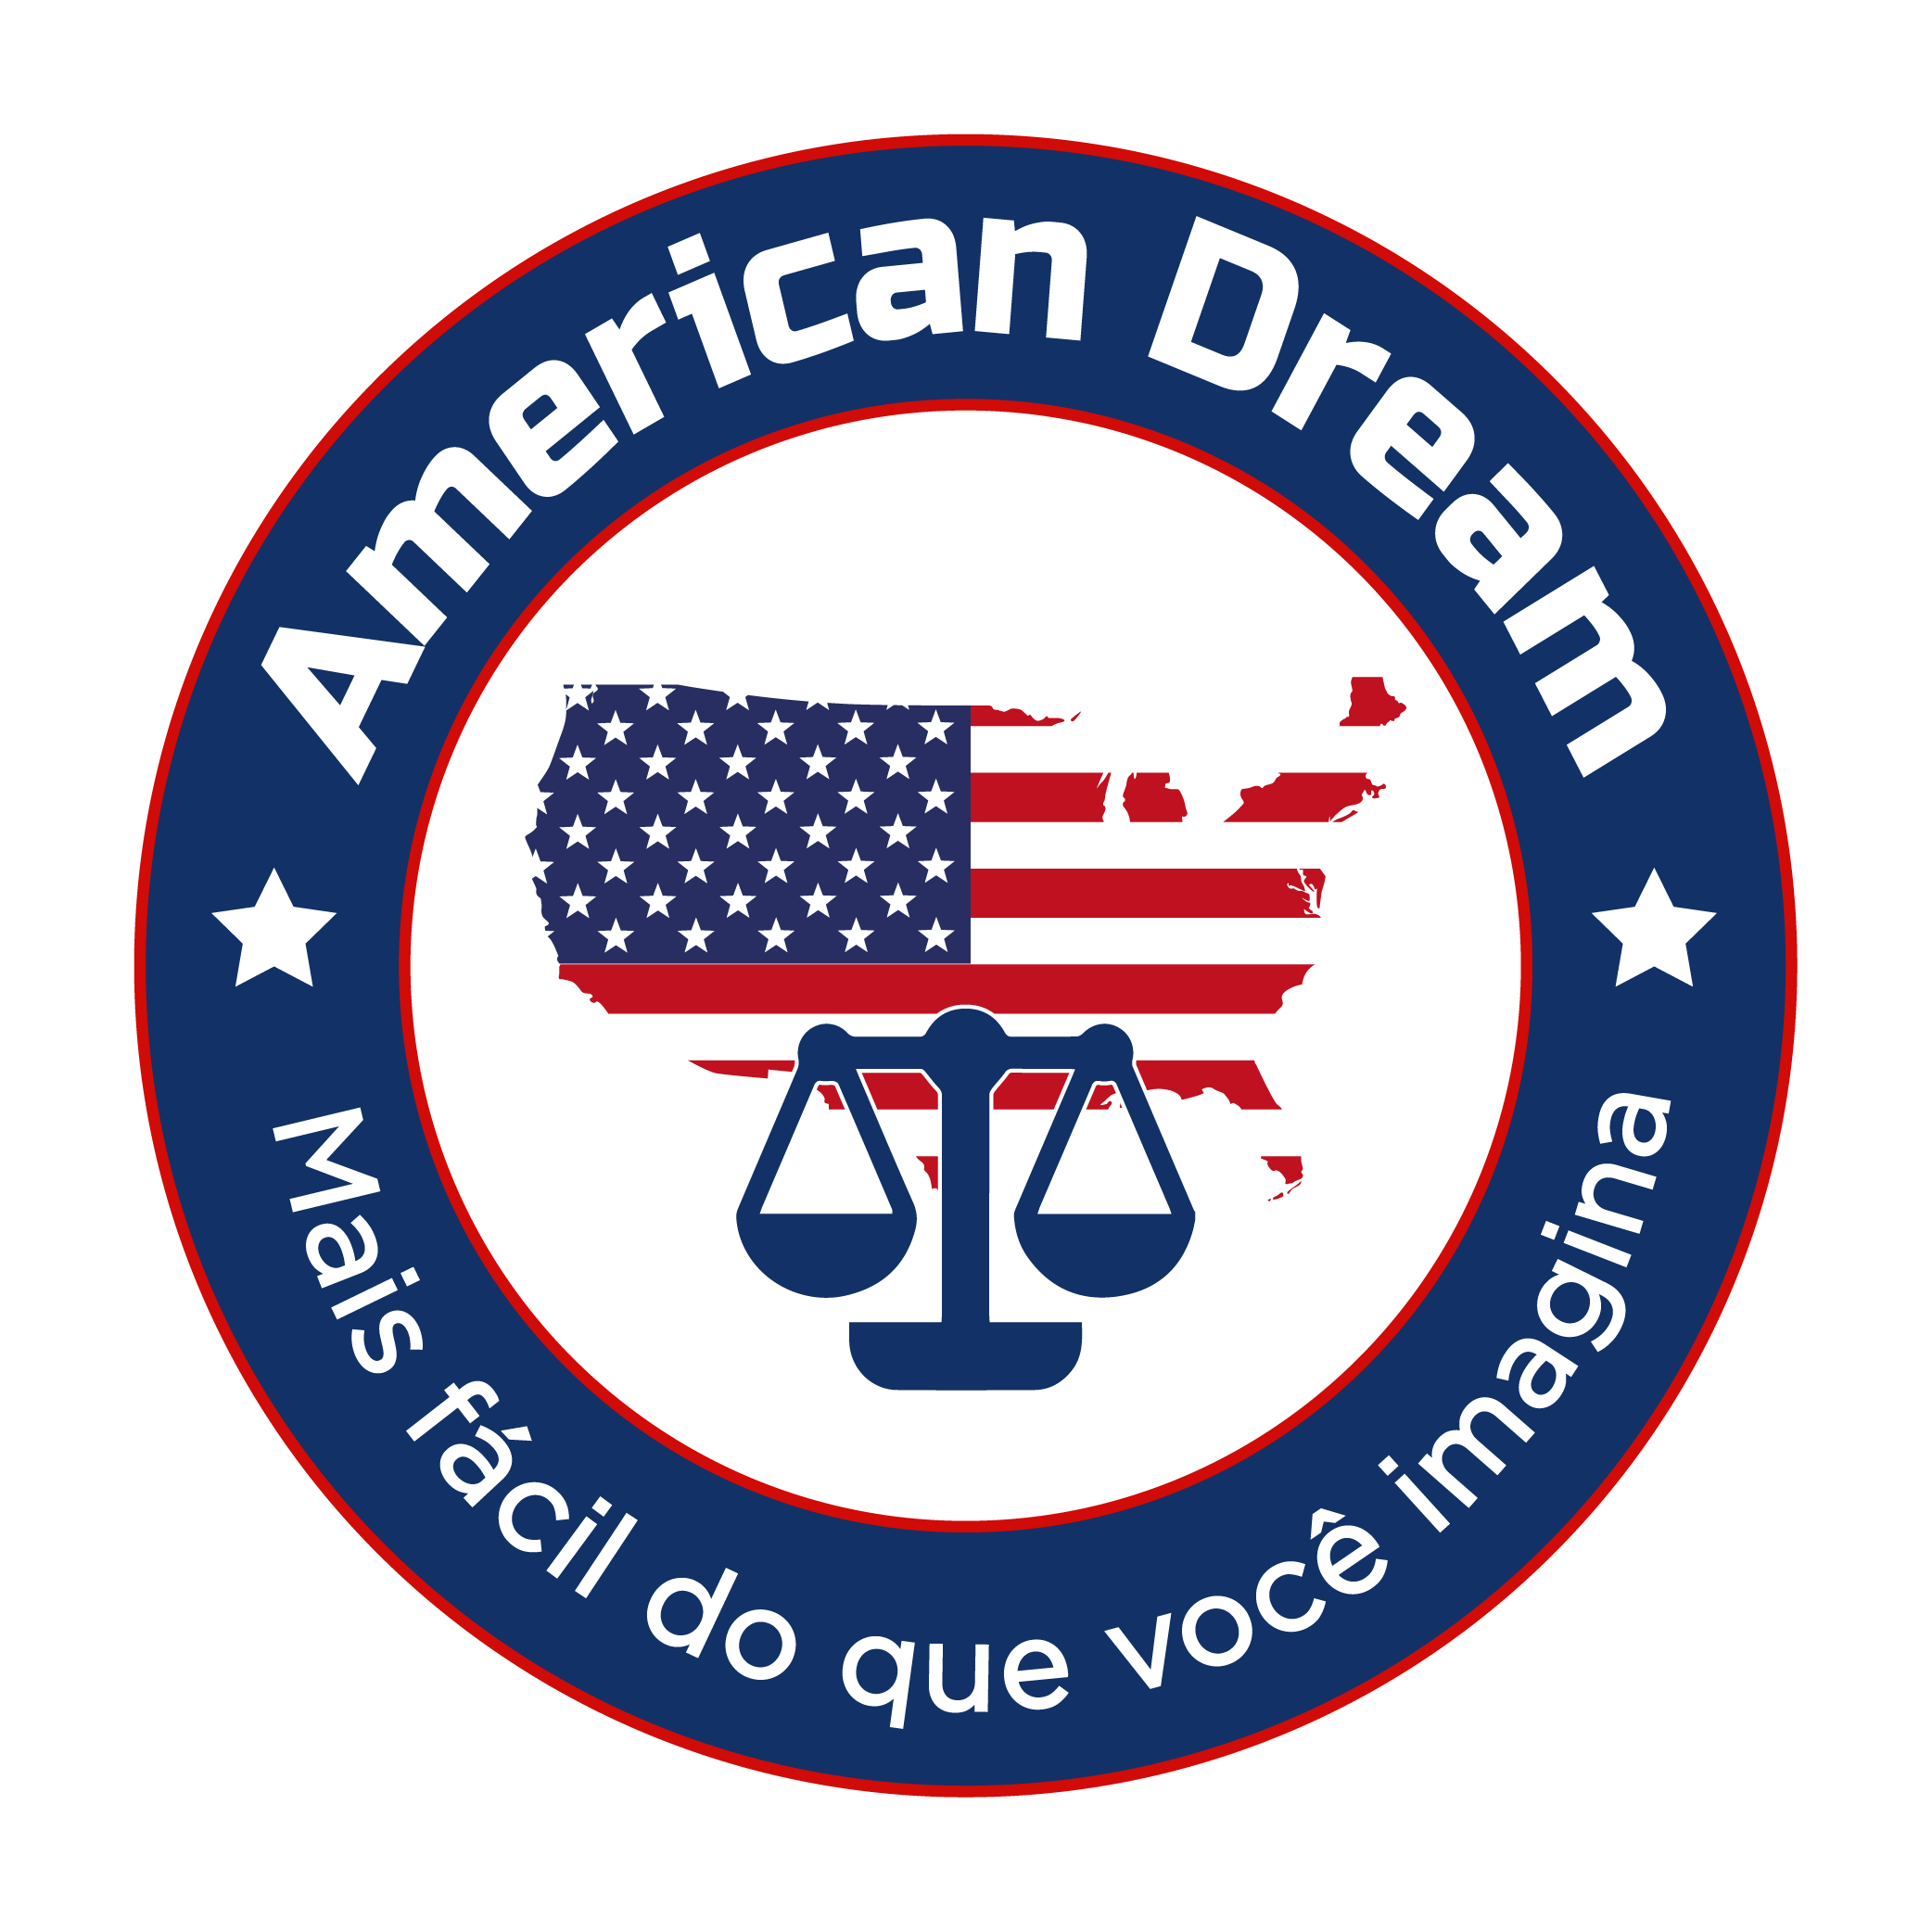 American dream ainda está vivo: 92 bilionários americanos são imigrantes -  Forbes Portugal